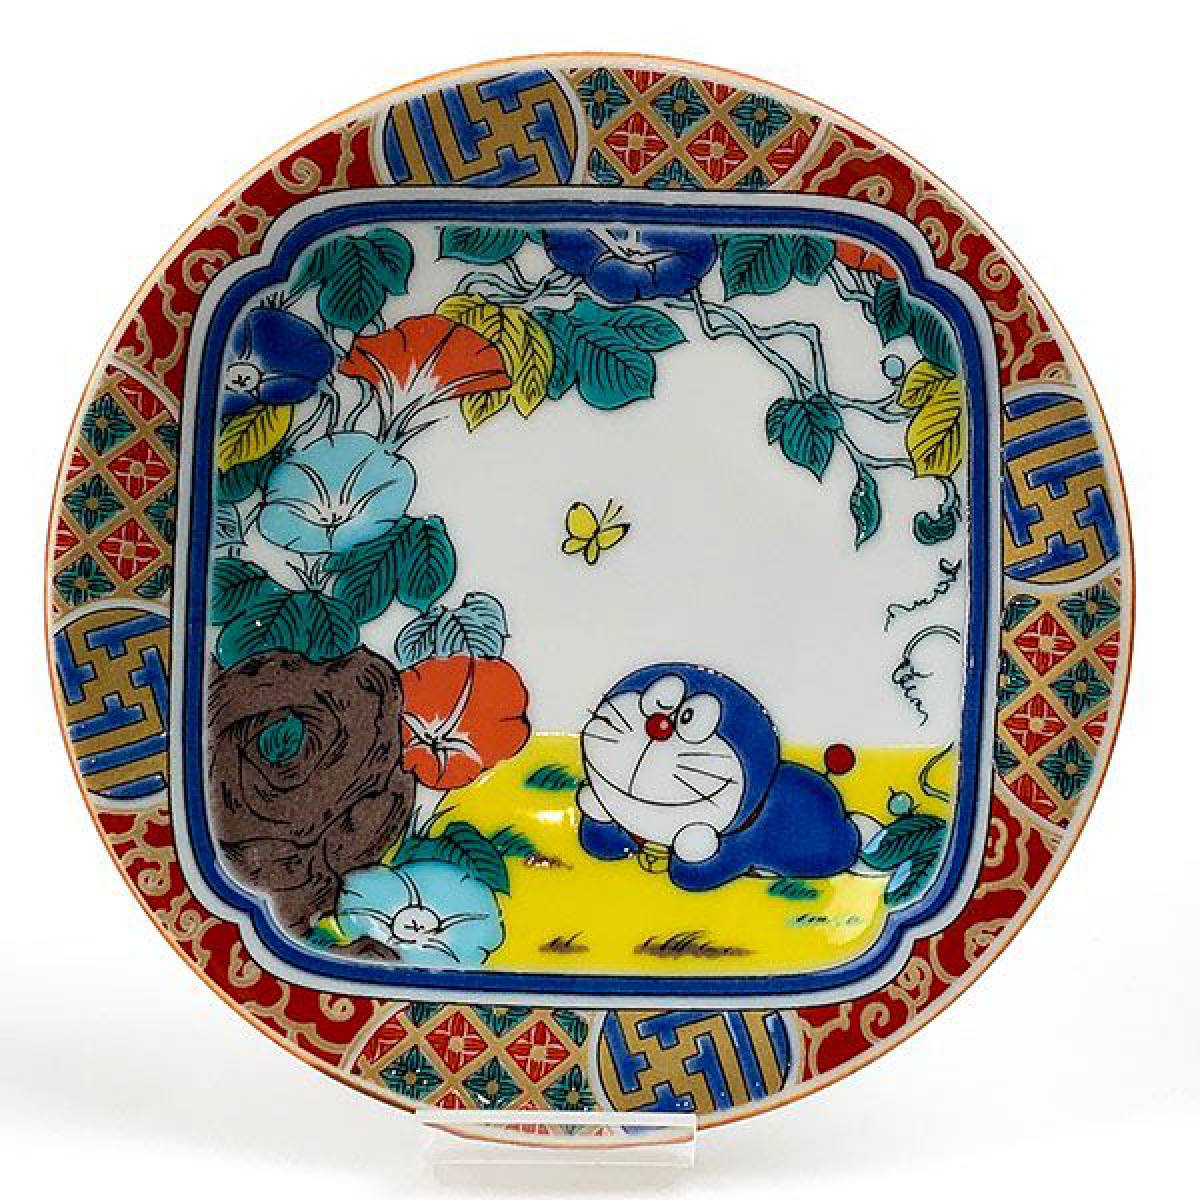 ドラえもん 九谷焼の小皿は和風デザインでとってもオシャレ プレゼントにも最適ですよ Newscast